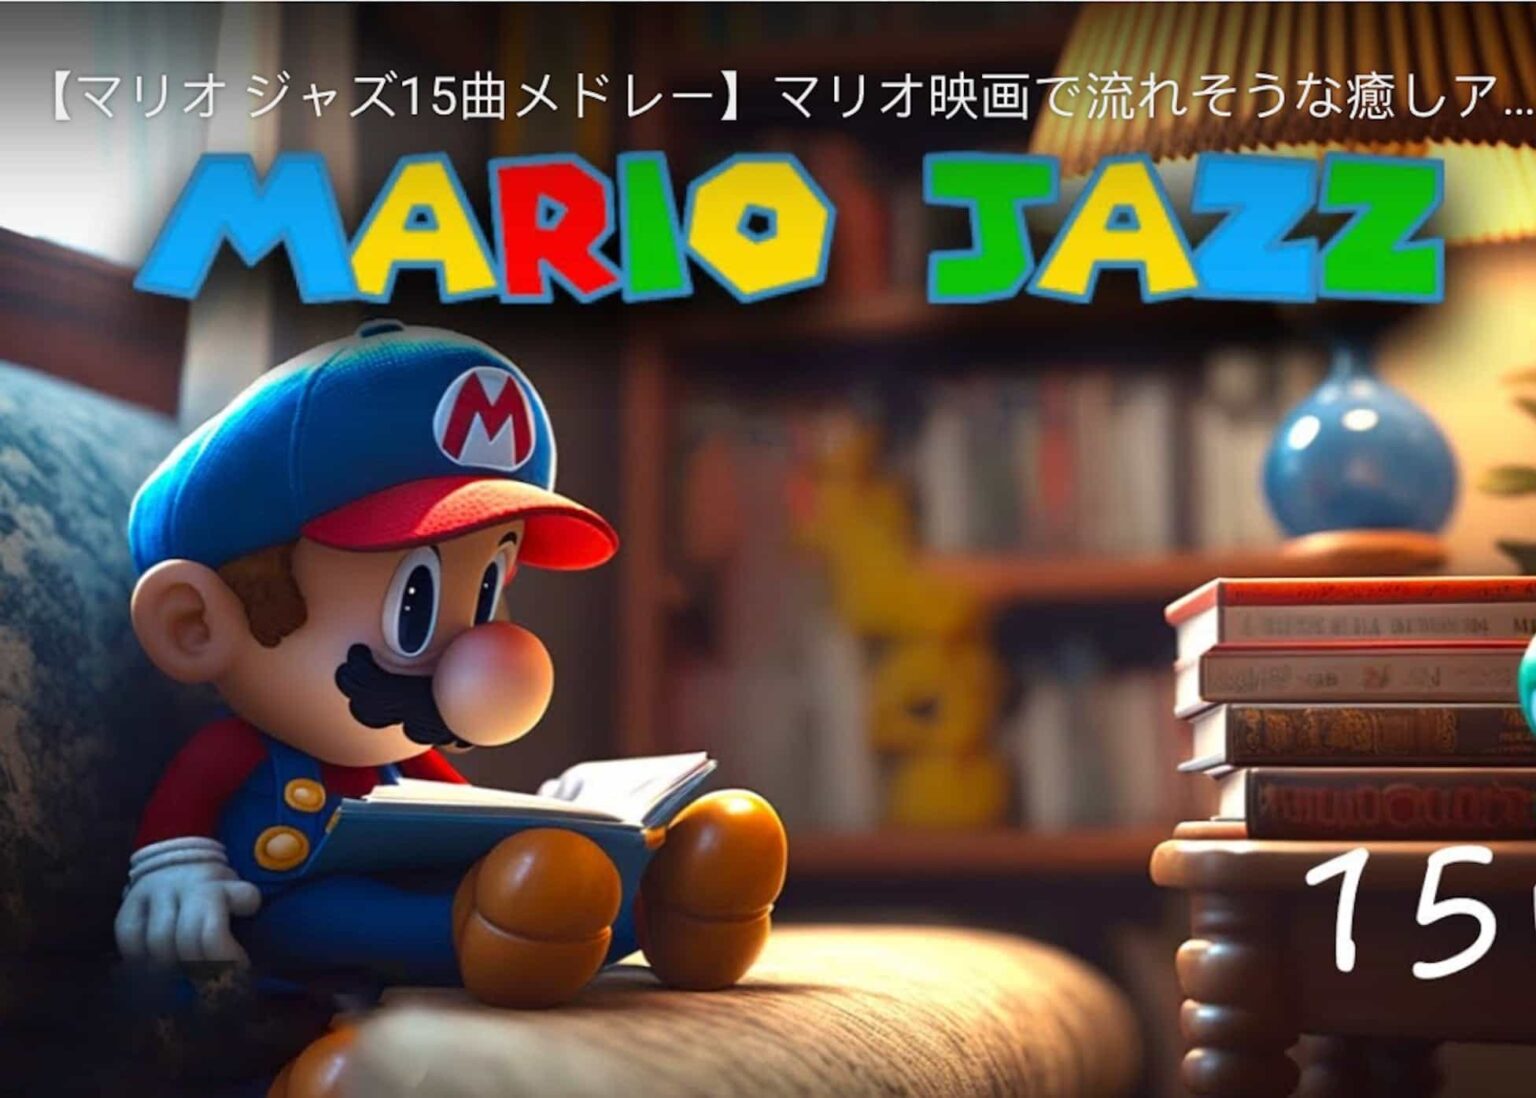 Listen to Some sweet Super Mario Jazz